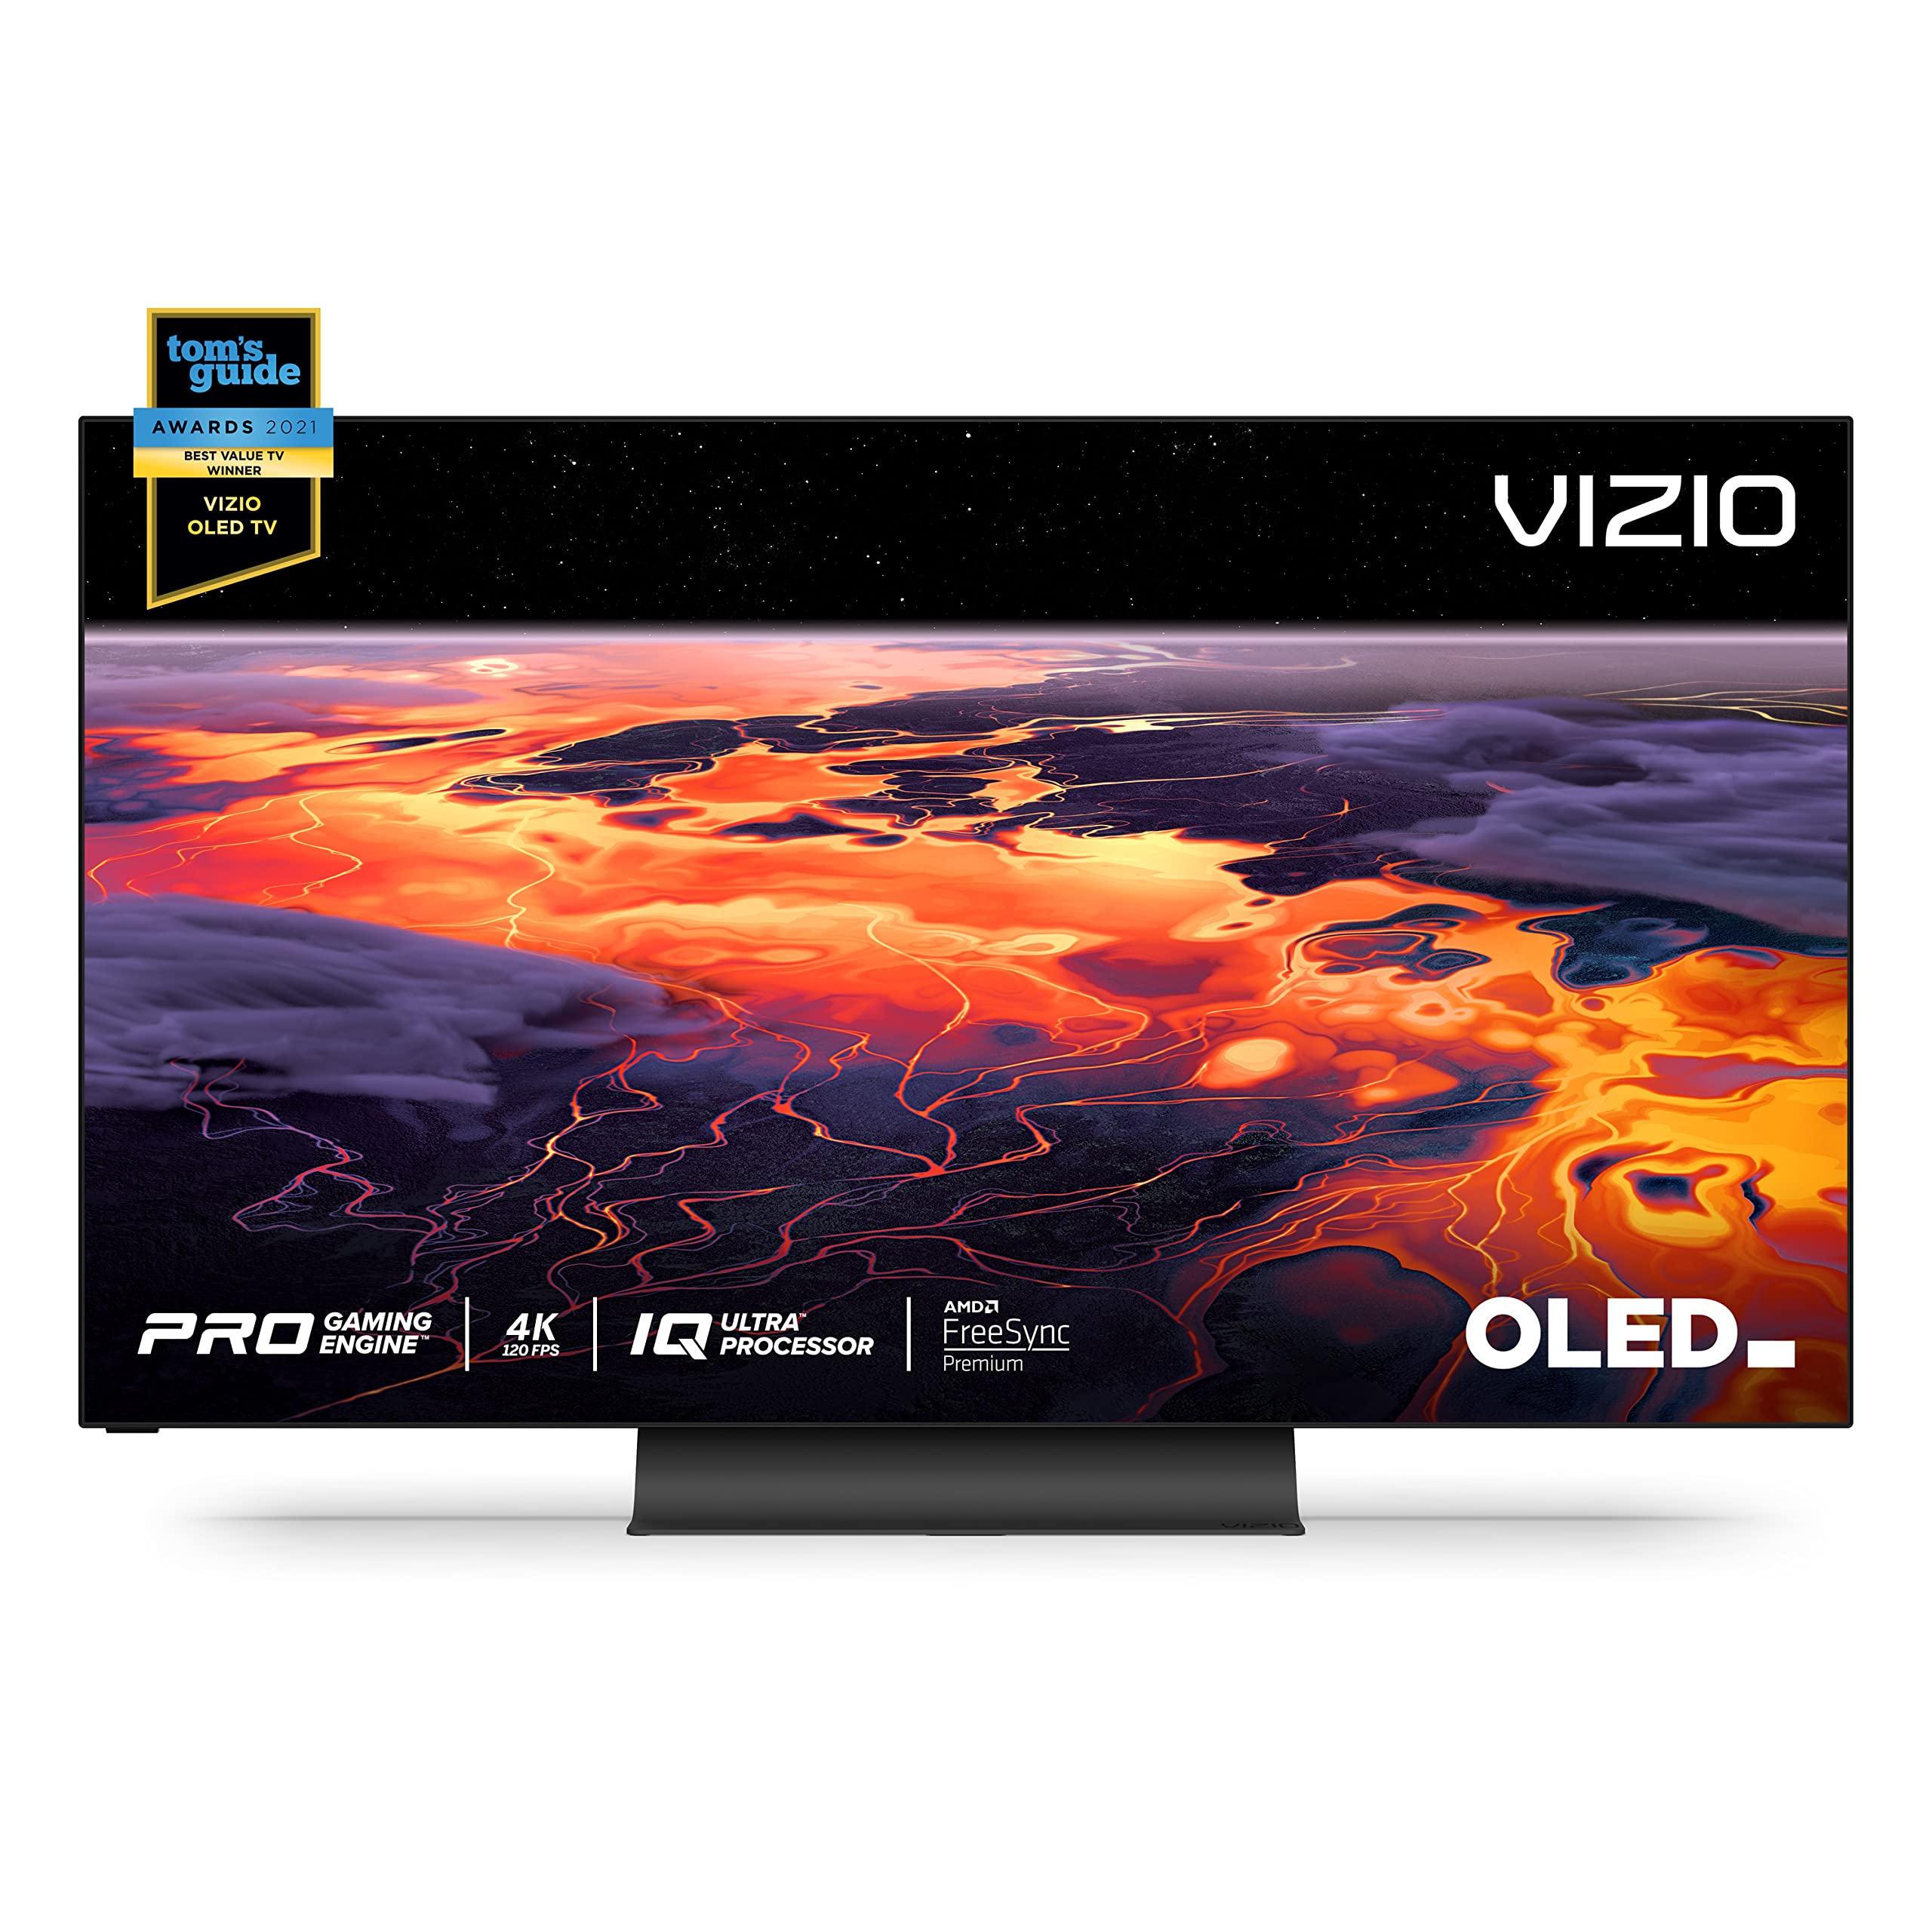  VIZIO 55 インチ OLED プレミアム 4K UHD HDR スマート TV、ドルビー ビジョン、HDMI 2.1、120Hz リフレッシュ レート、プロ ゲーミング エンジン、Apple AirPlay...